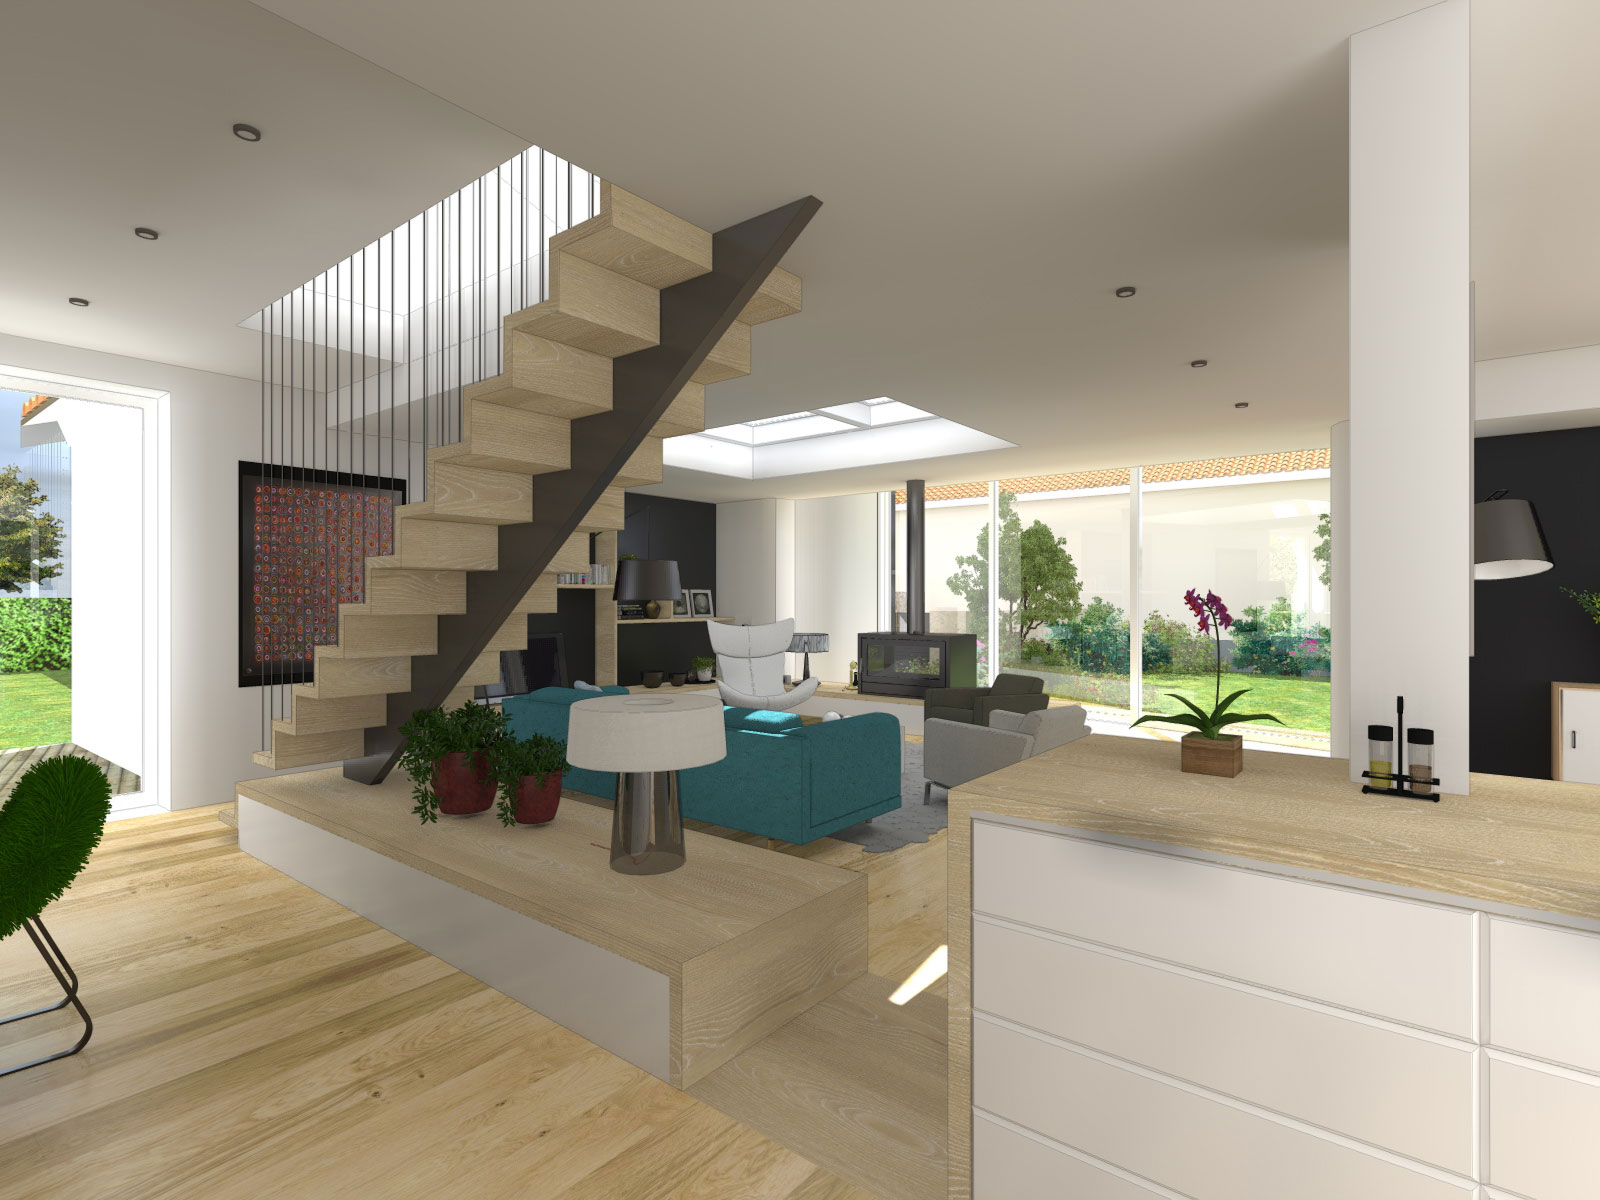 Extension d'une maison aménagement intérieur à gorges (44)